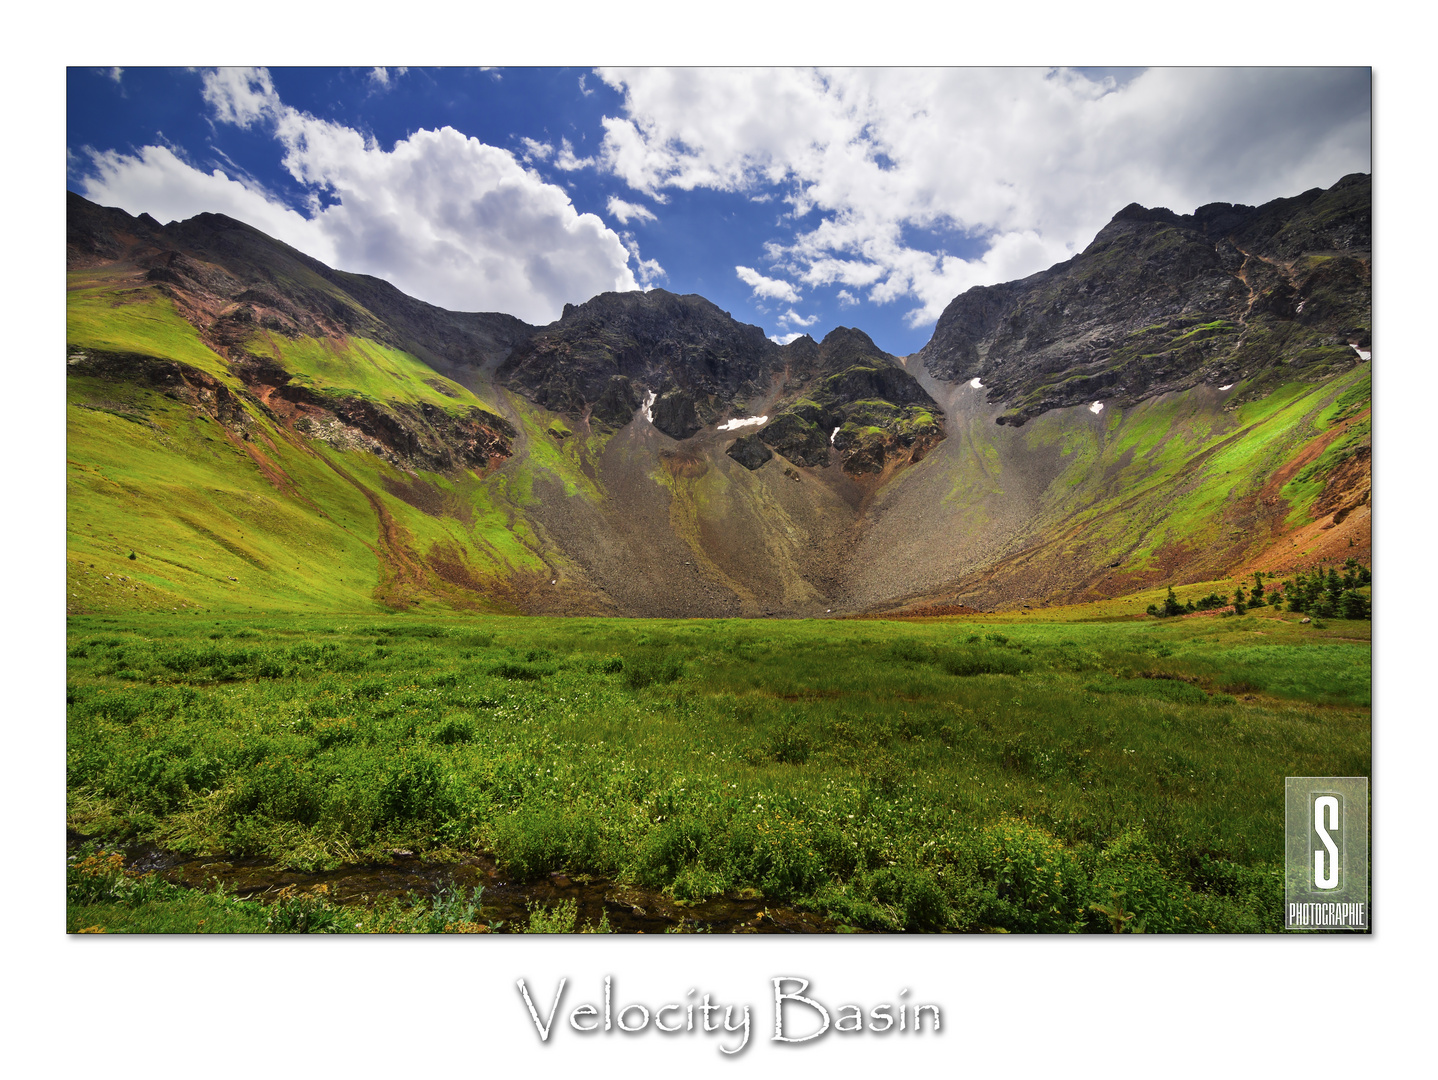 Velocity Basin, San Juan Mountains